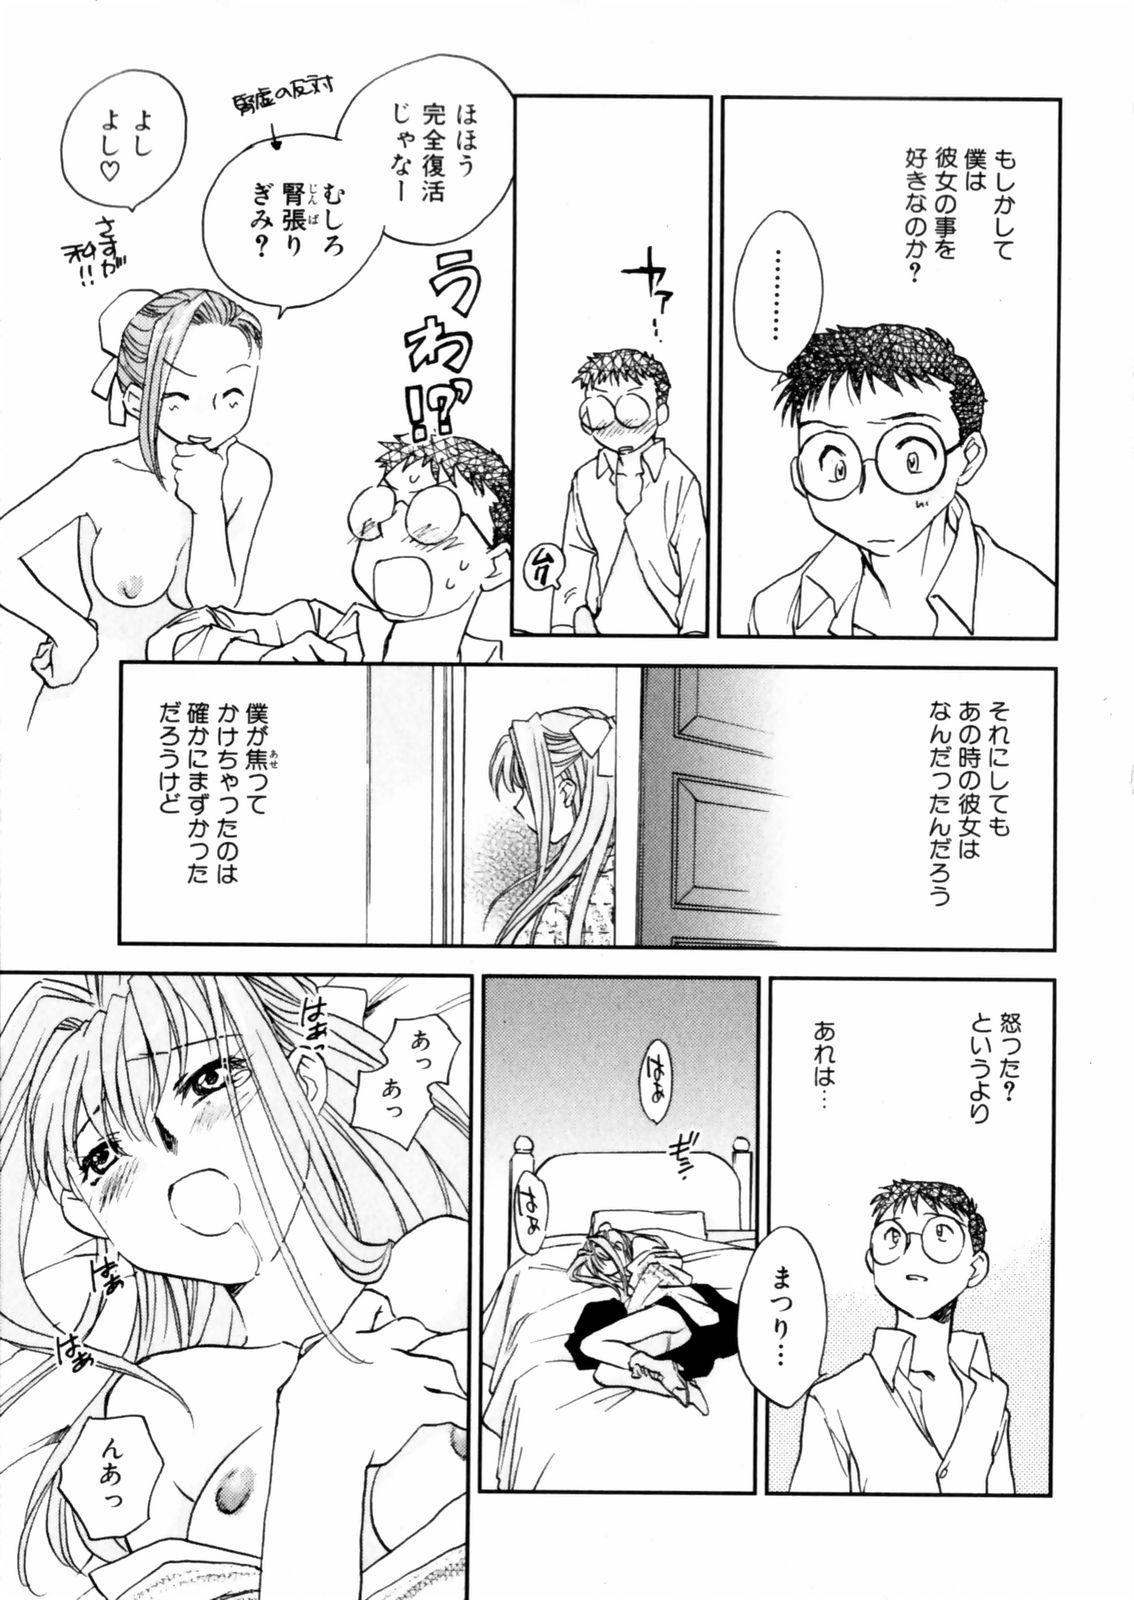 [Okano Ahiru] Hanasake ! Otome Juku (Otome Private Tutoring School) Vol.2 40